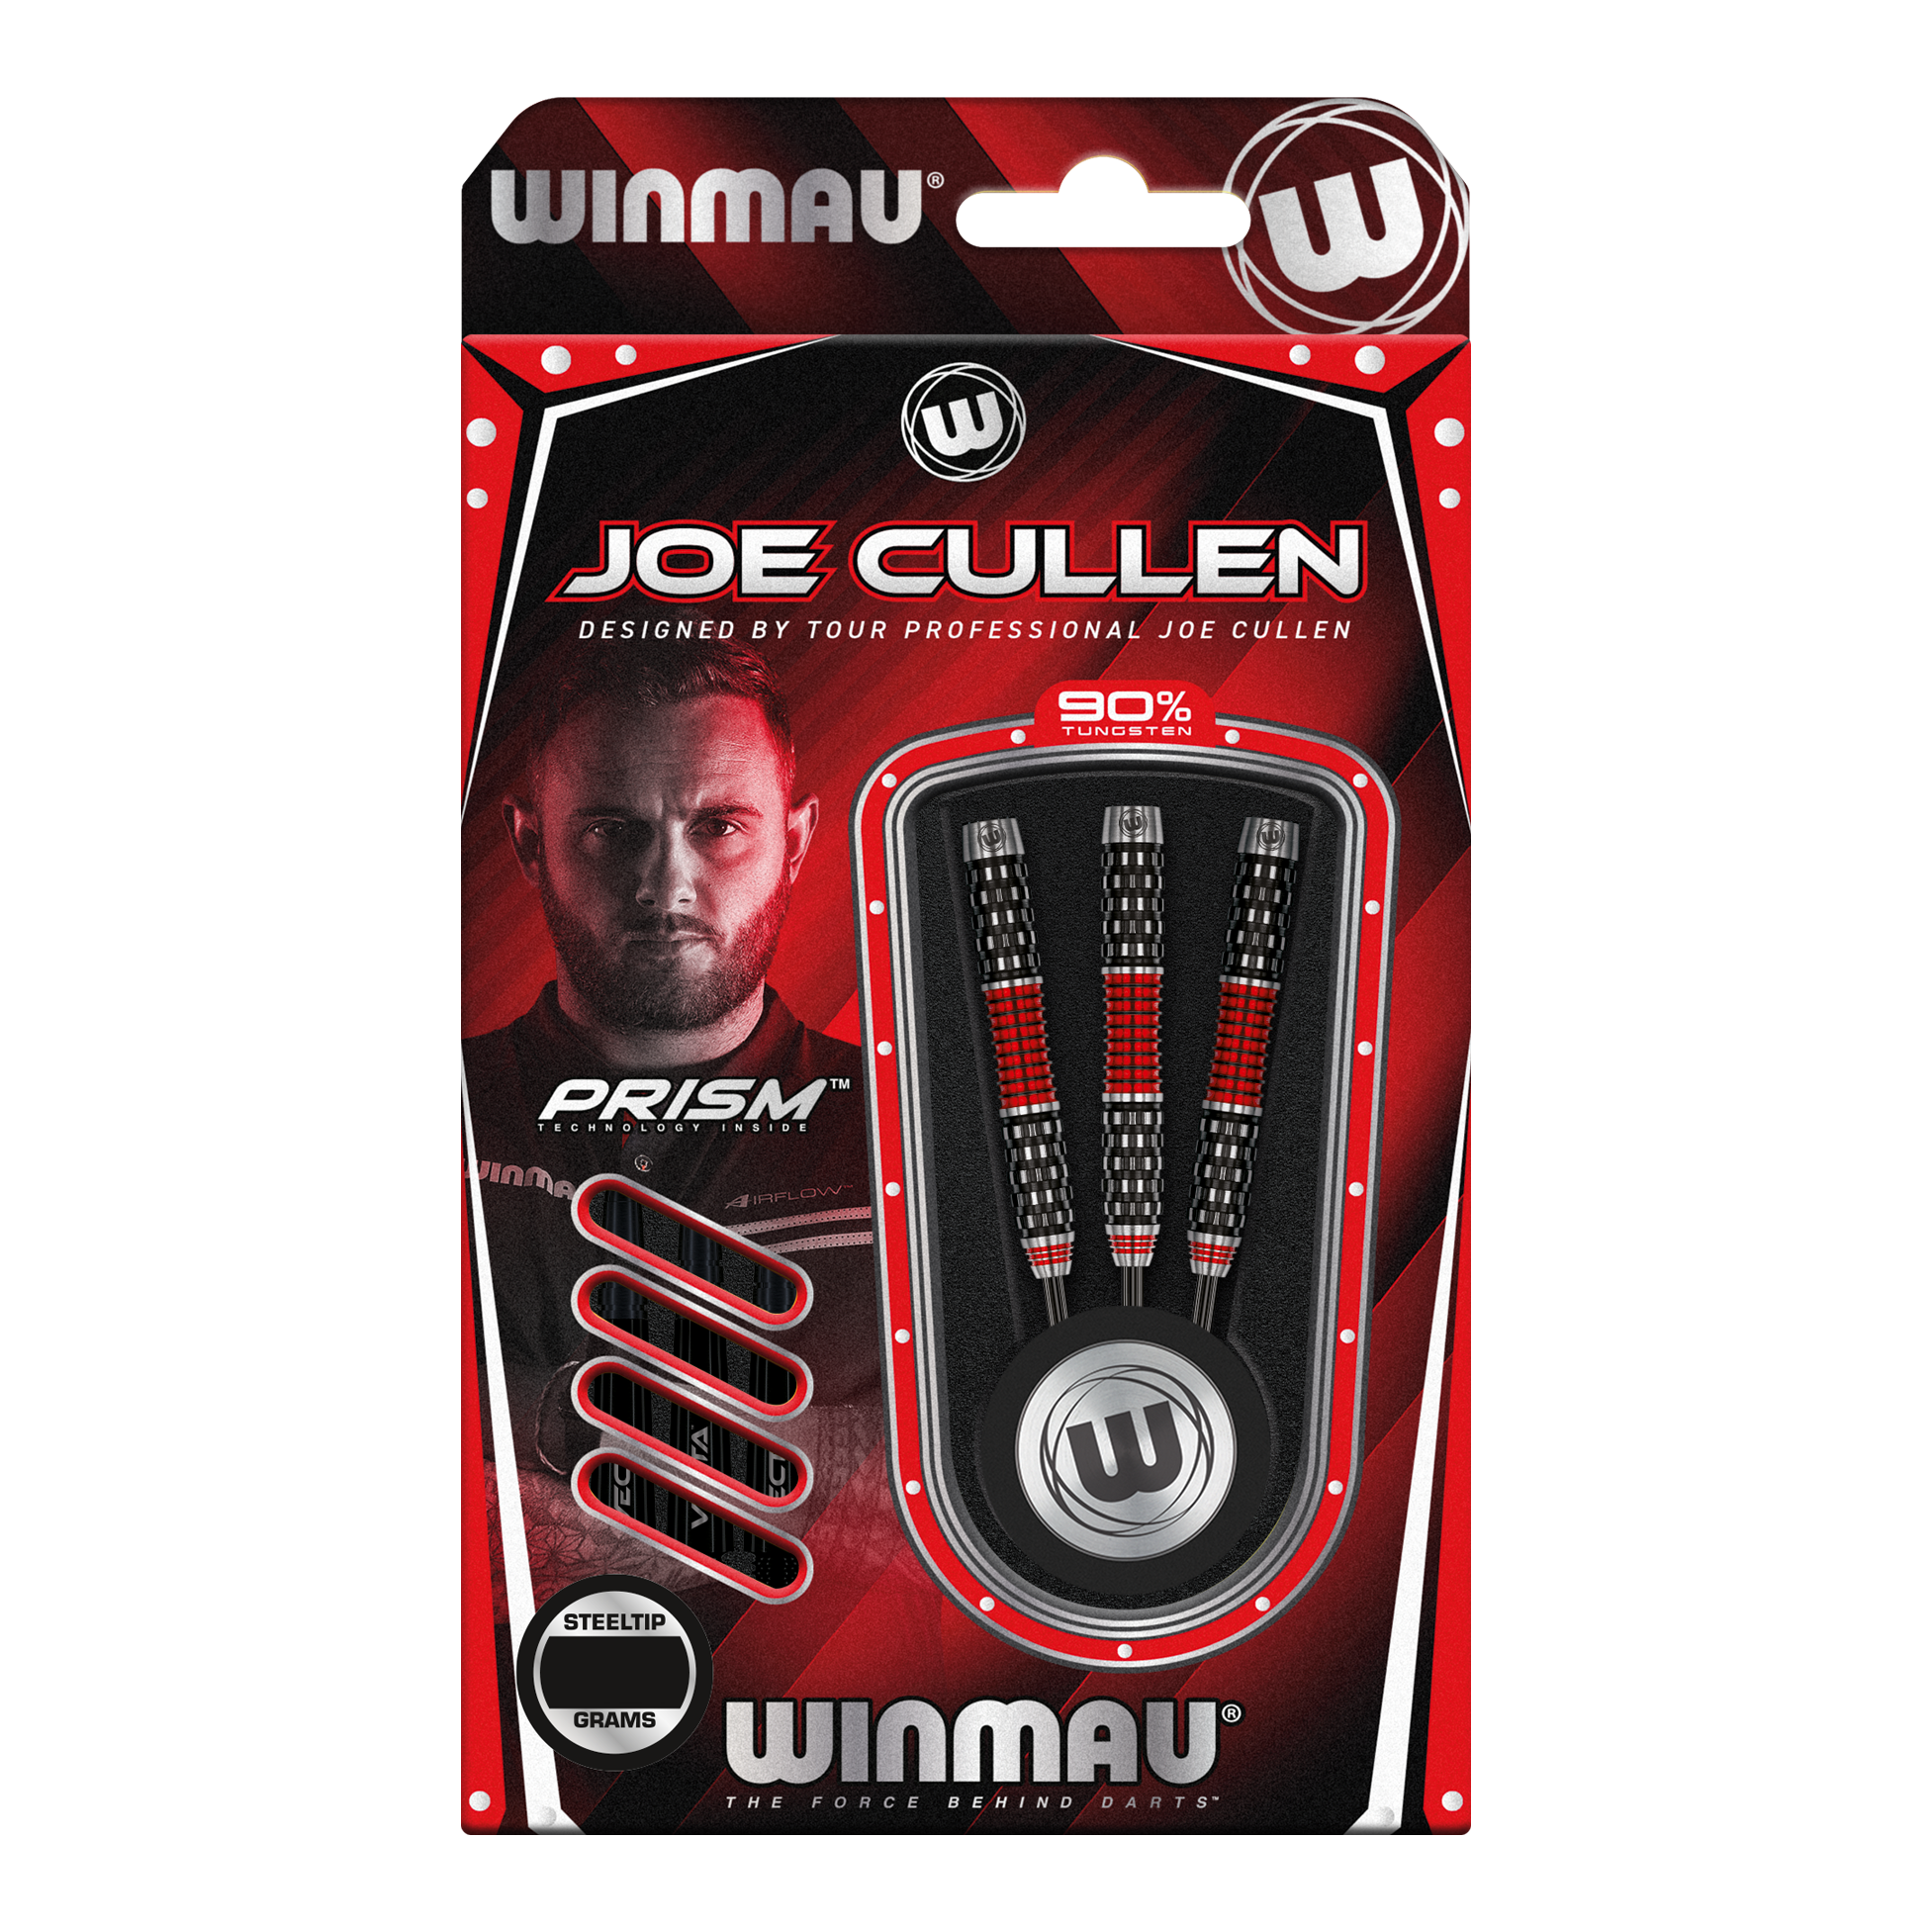 Stalowe rzutki Winmau Joe Cullen Rockstar Series RS1